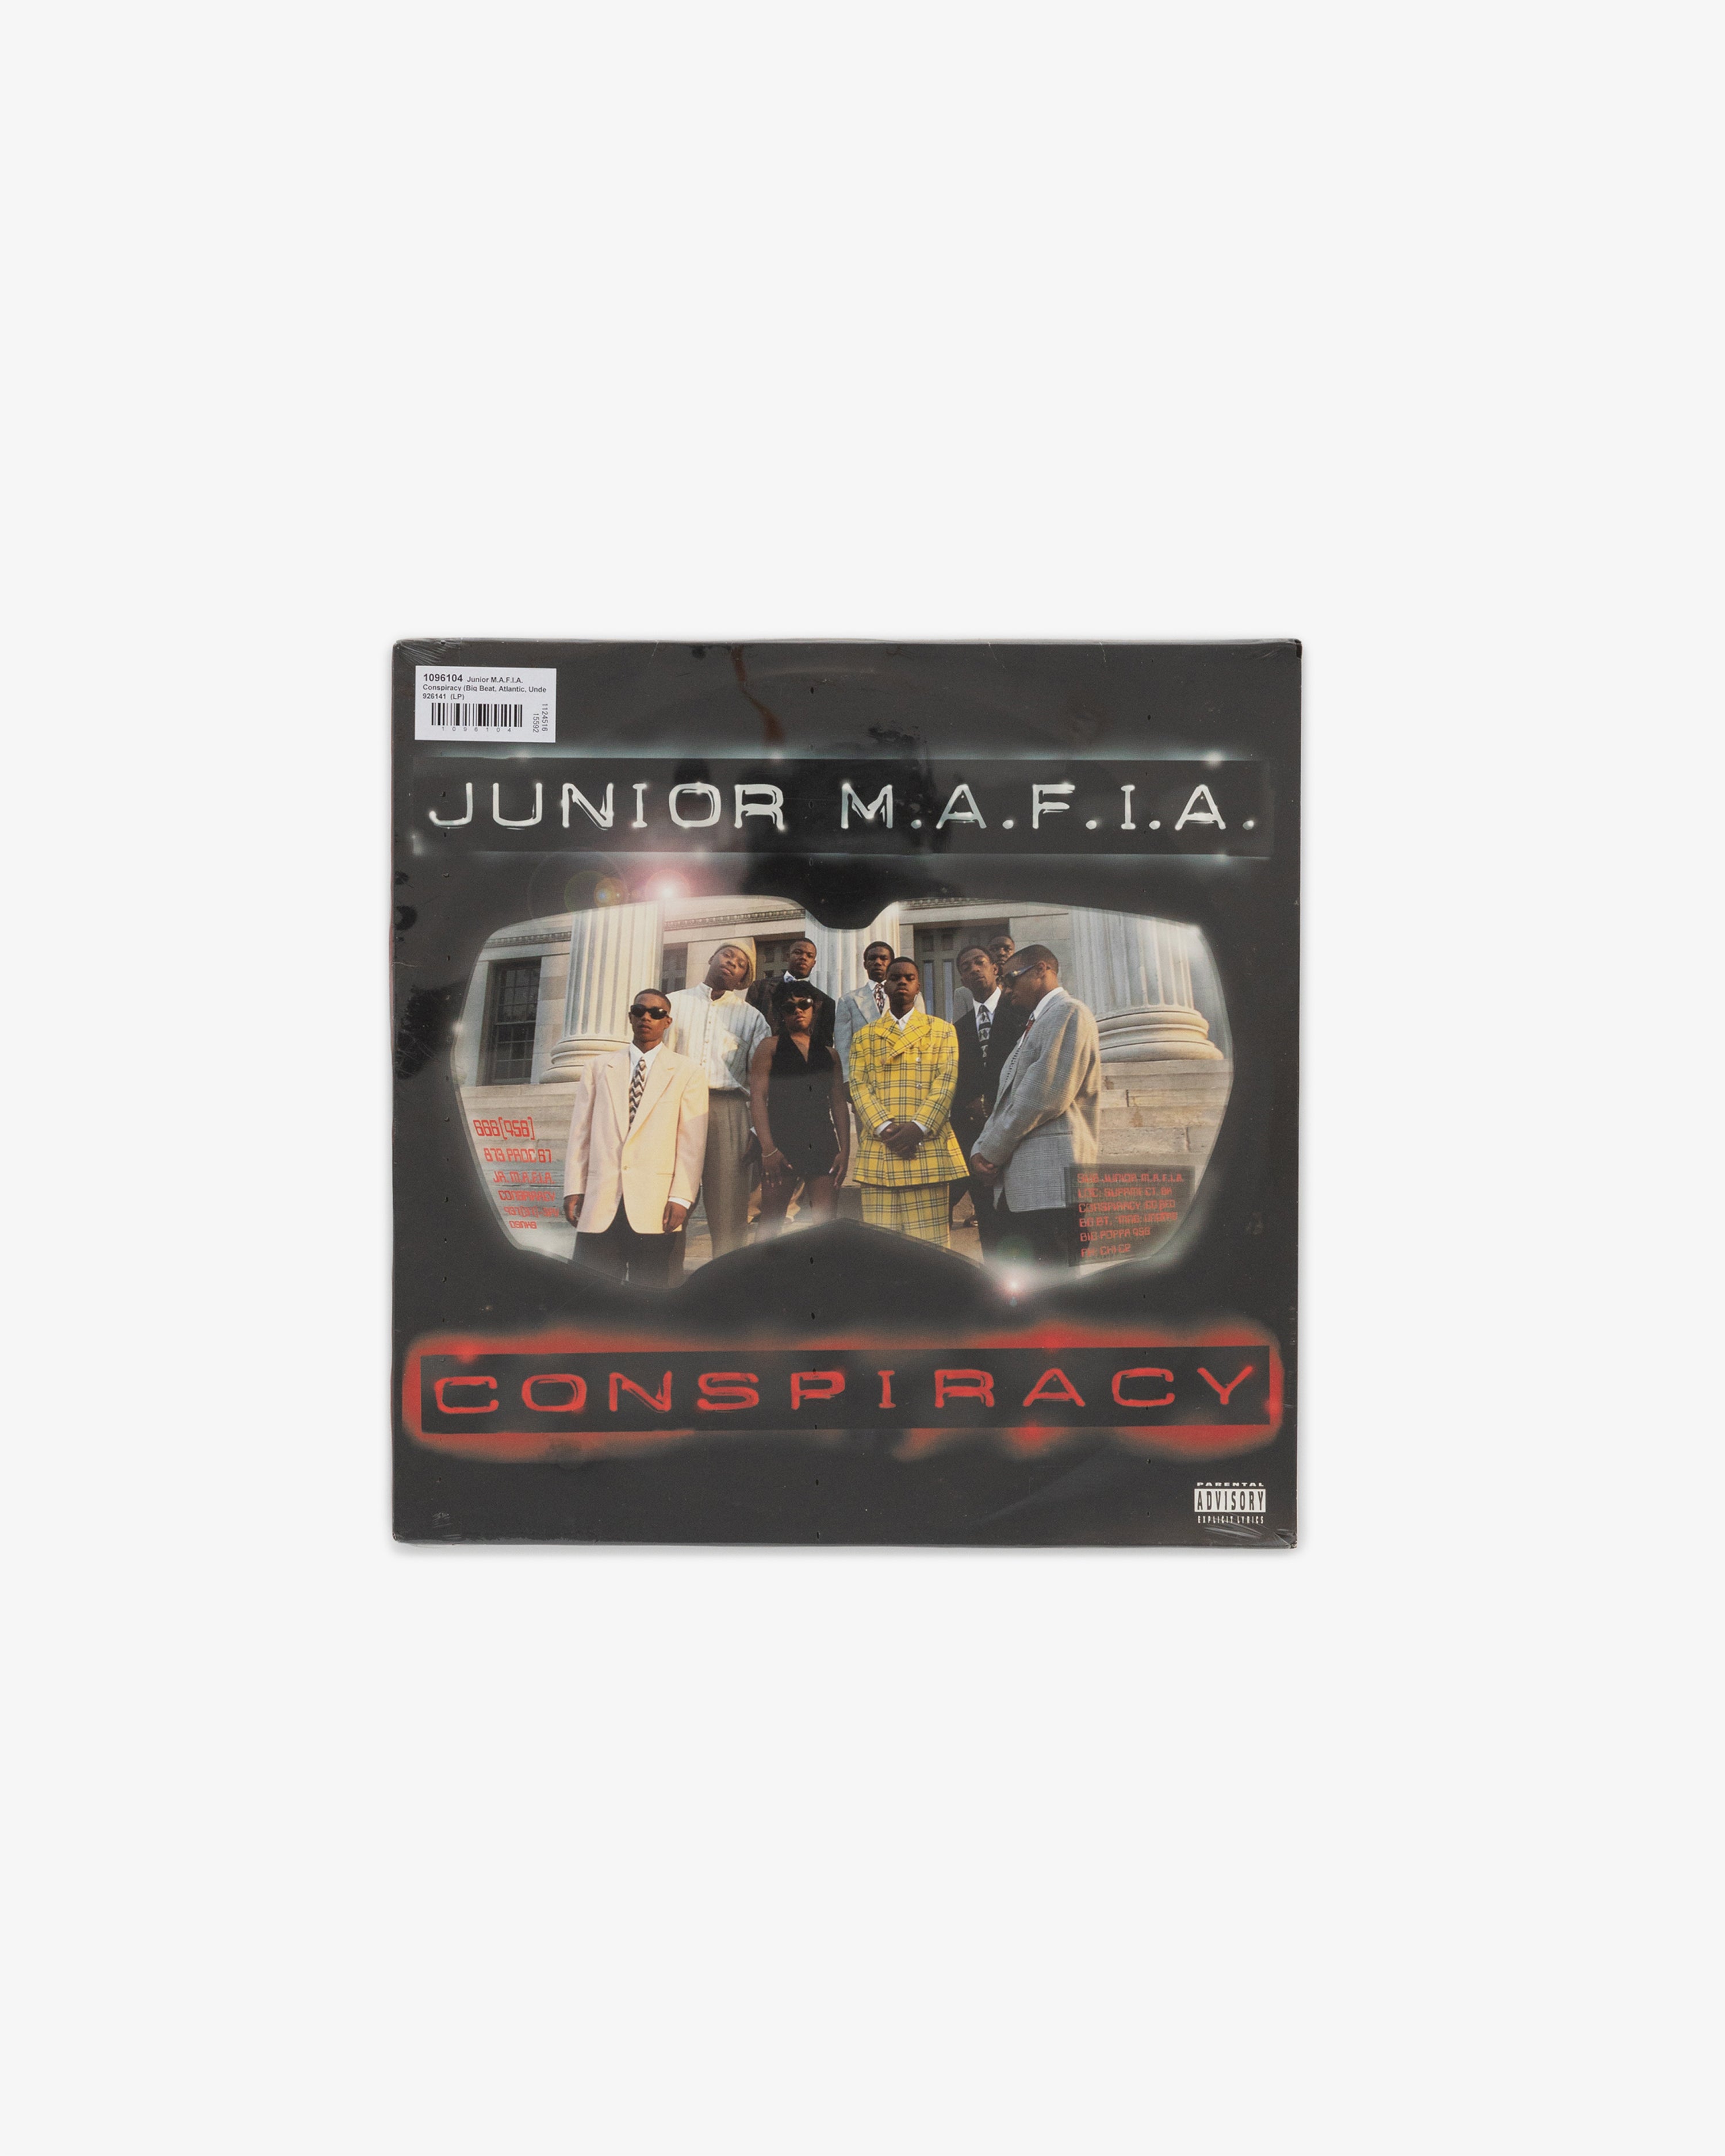 Junior M.A.F.I.A - Conspiracy LP